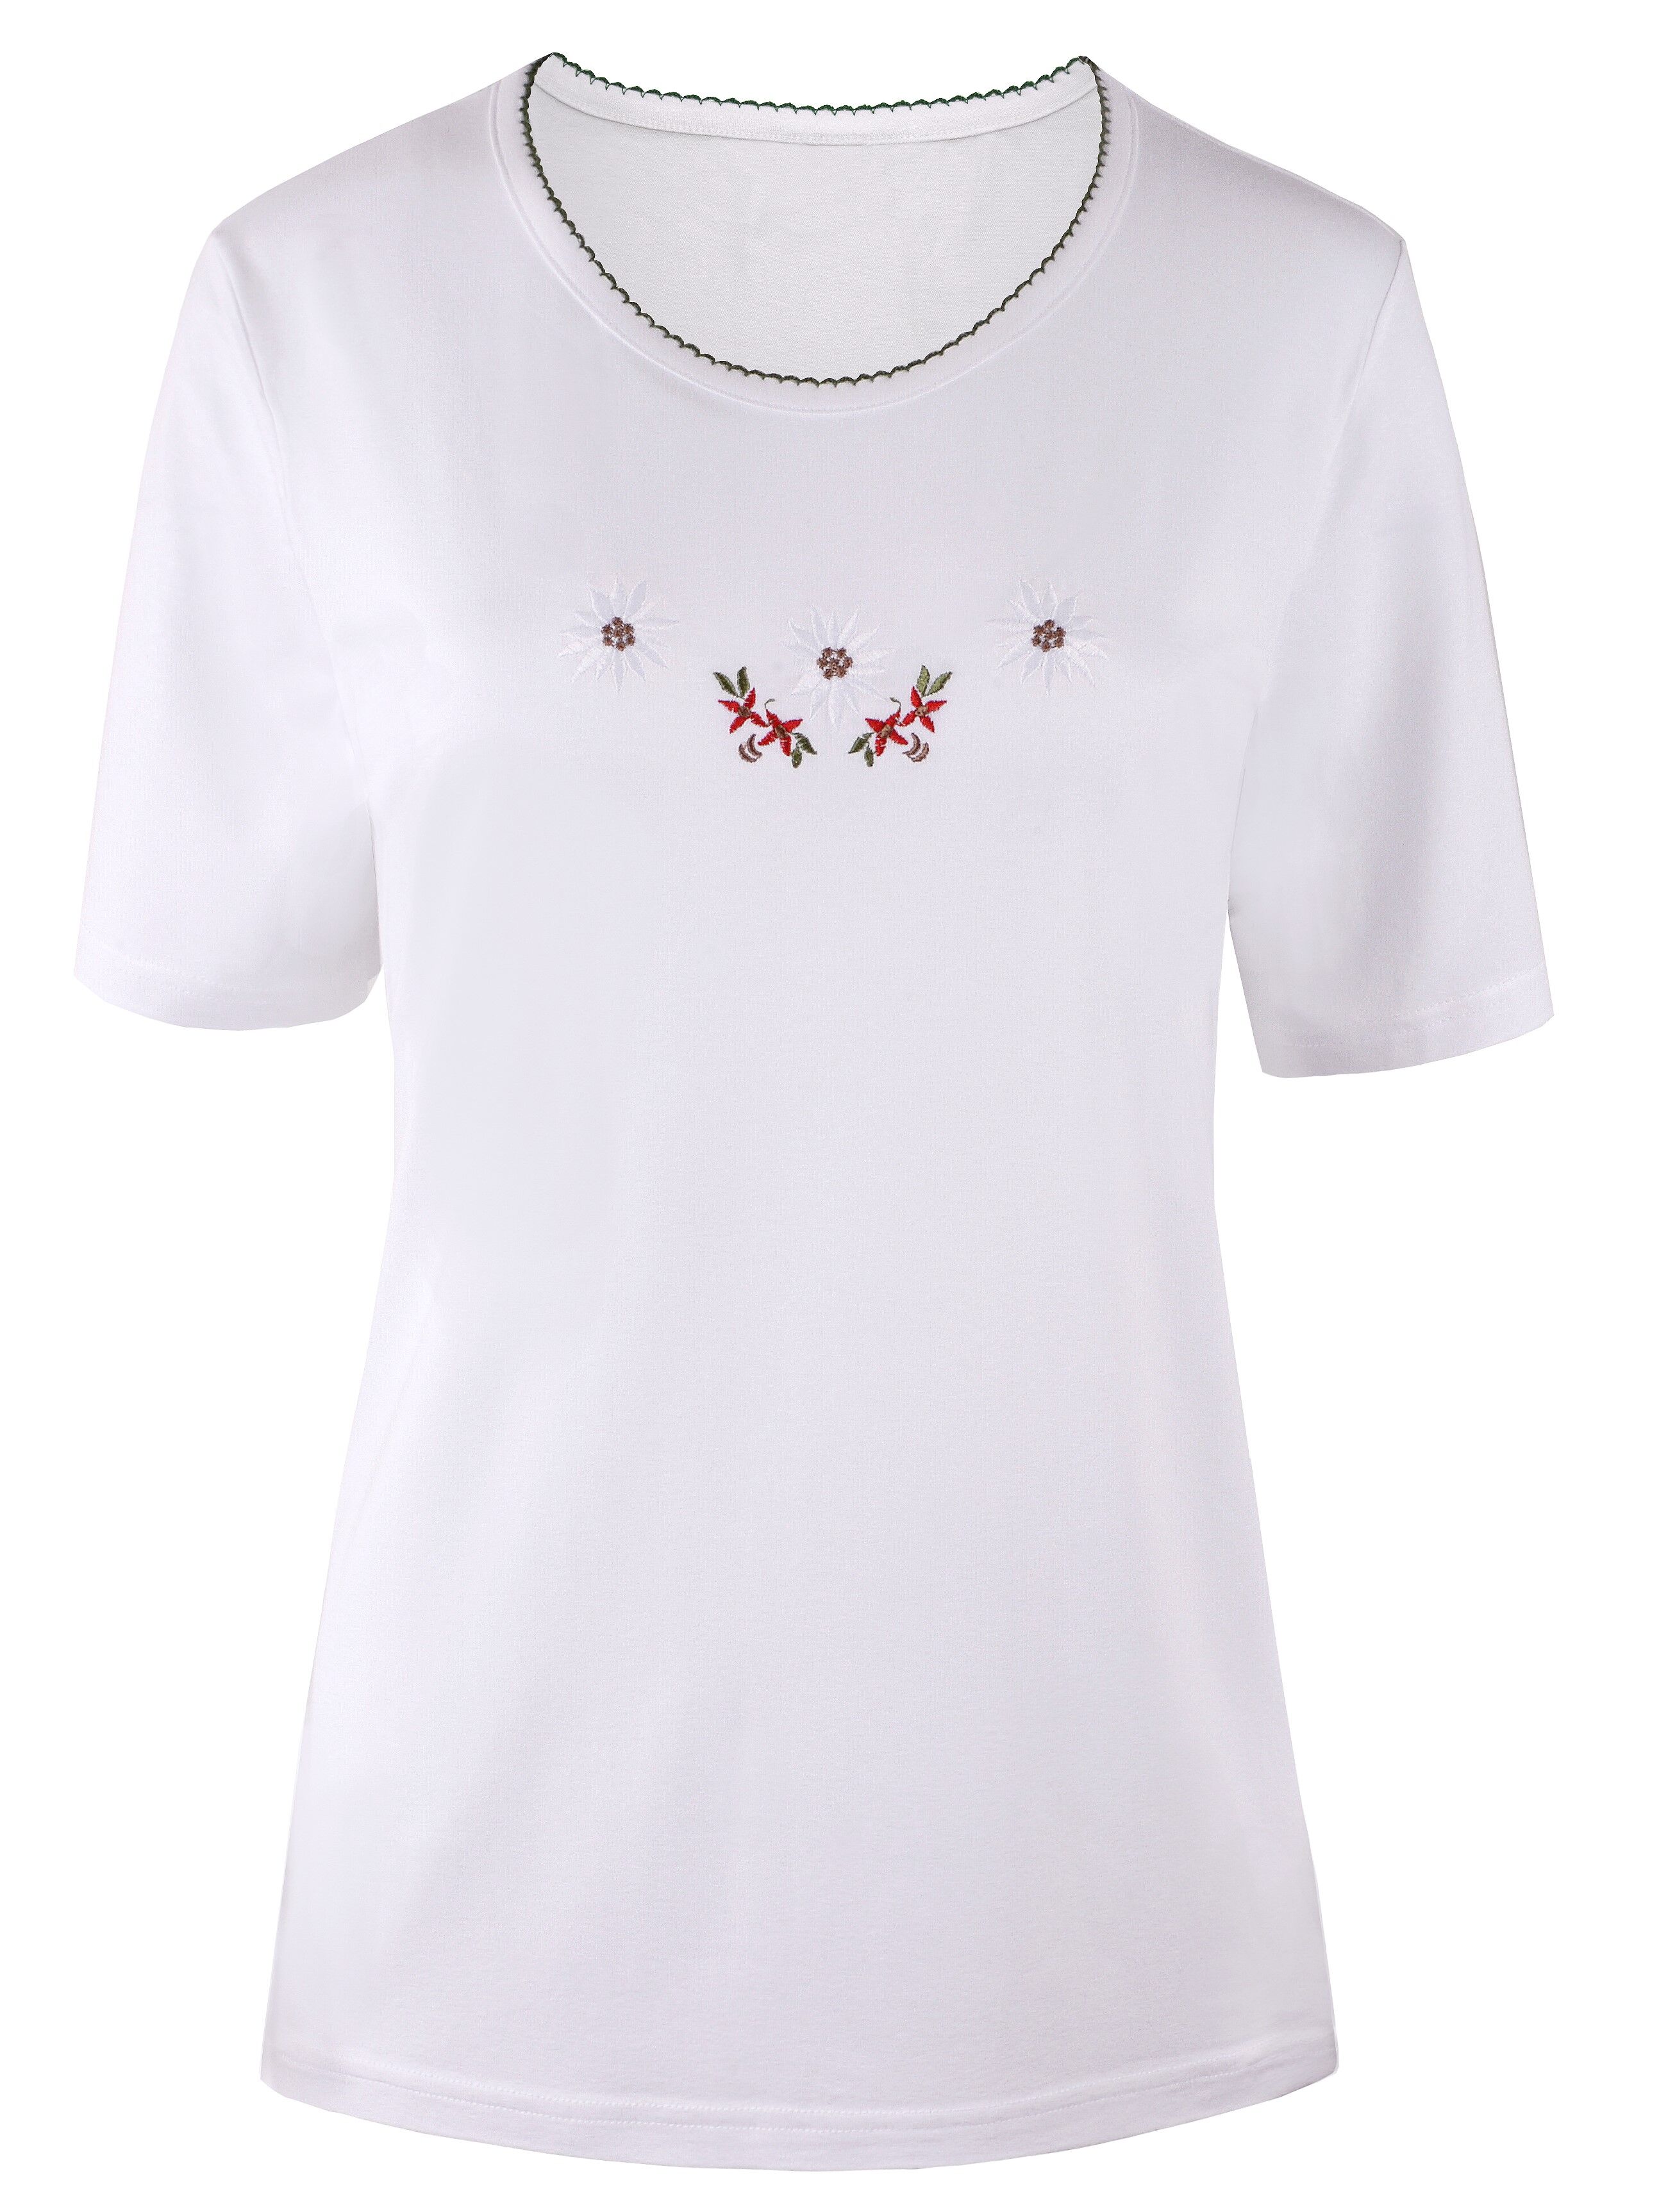 PREMIUM Trachtenshirt Damen T-Shirt lang Edelweiß-Stickerei Weiß 